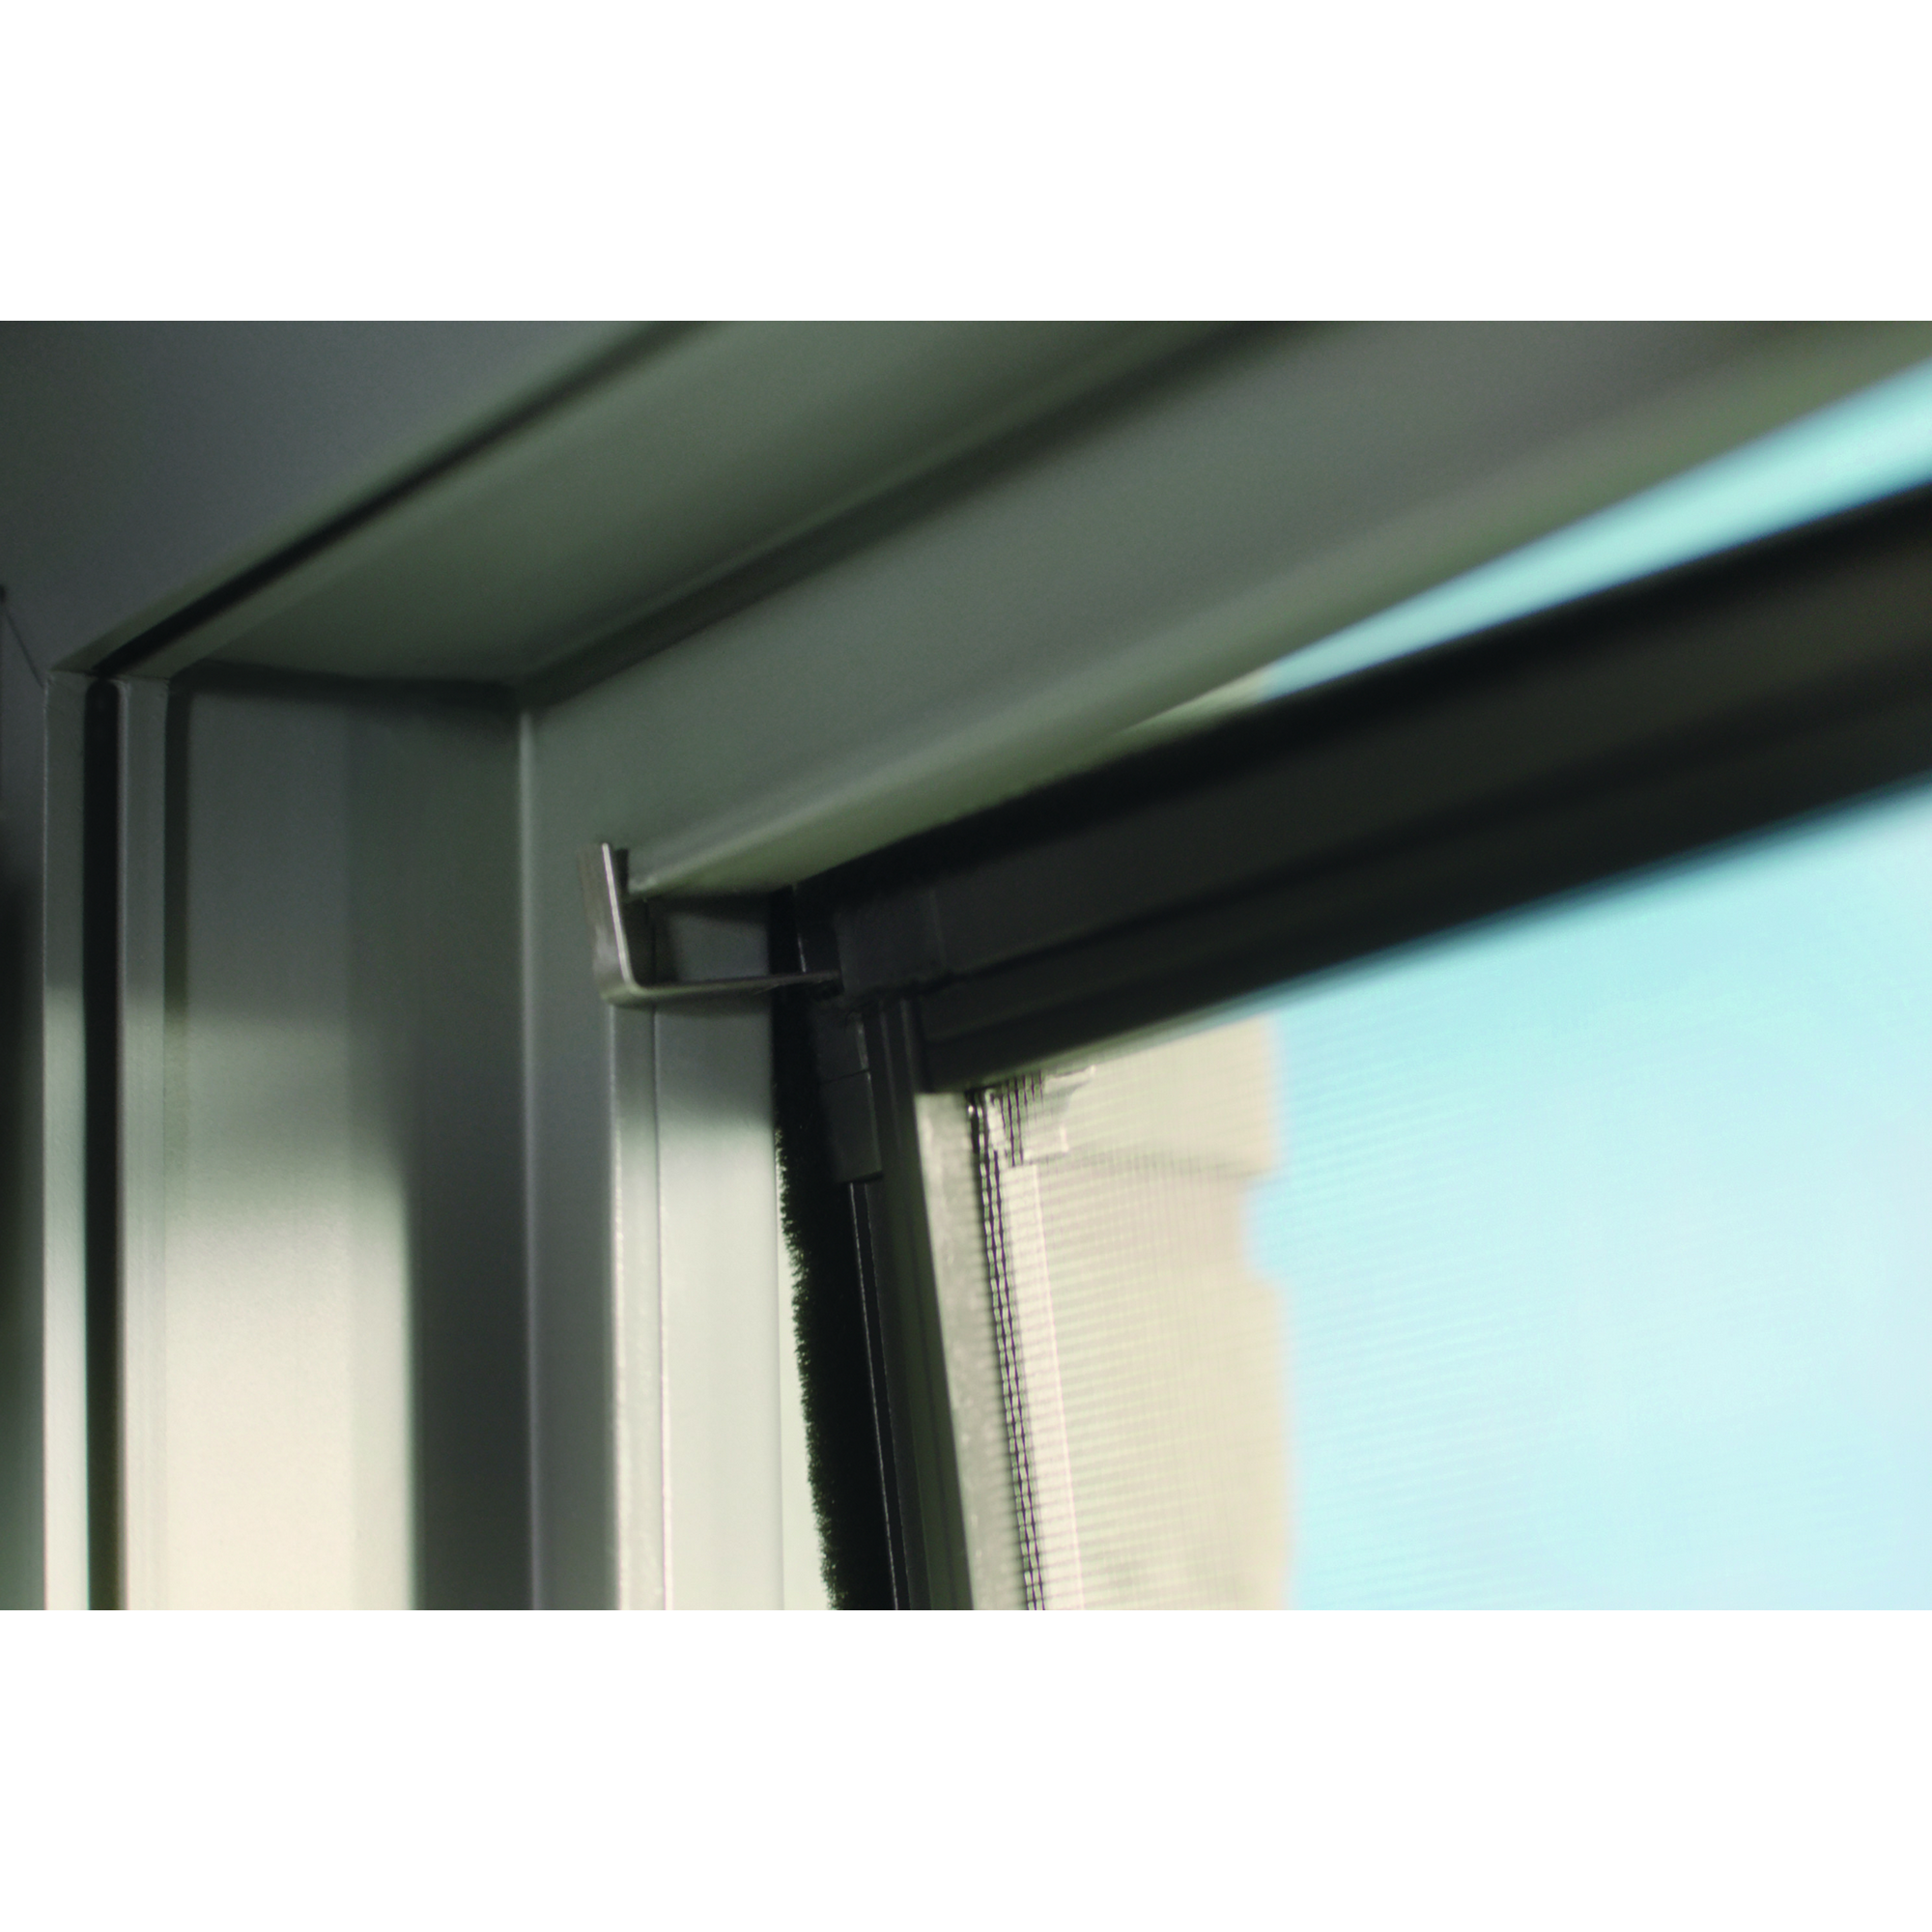 Fensterfliegengitter 'Falt' weiß stufenlos von 80 x 80 bis 140 x 140 cm + product picture